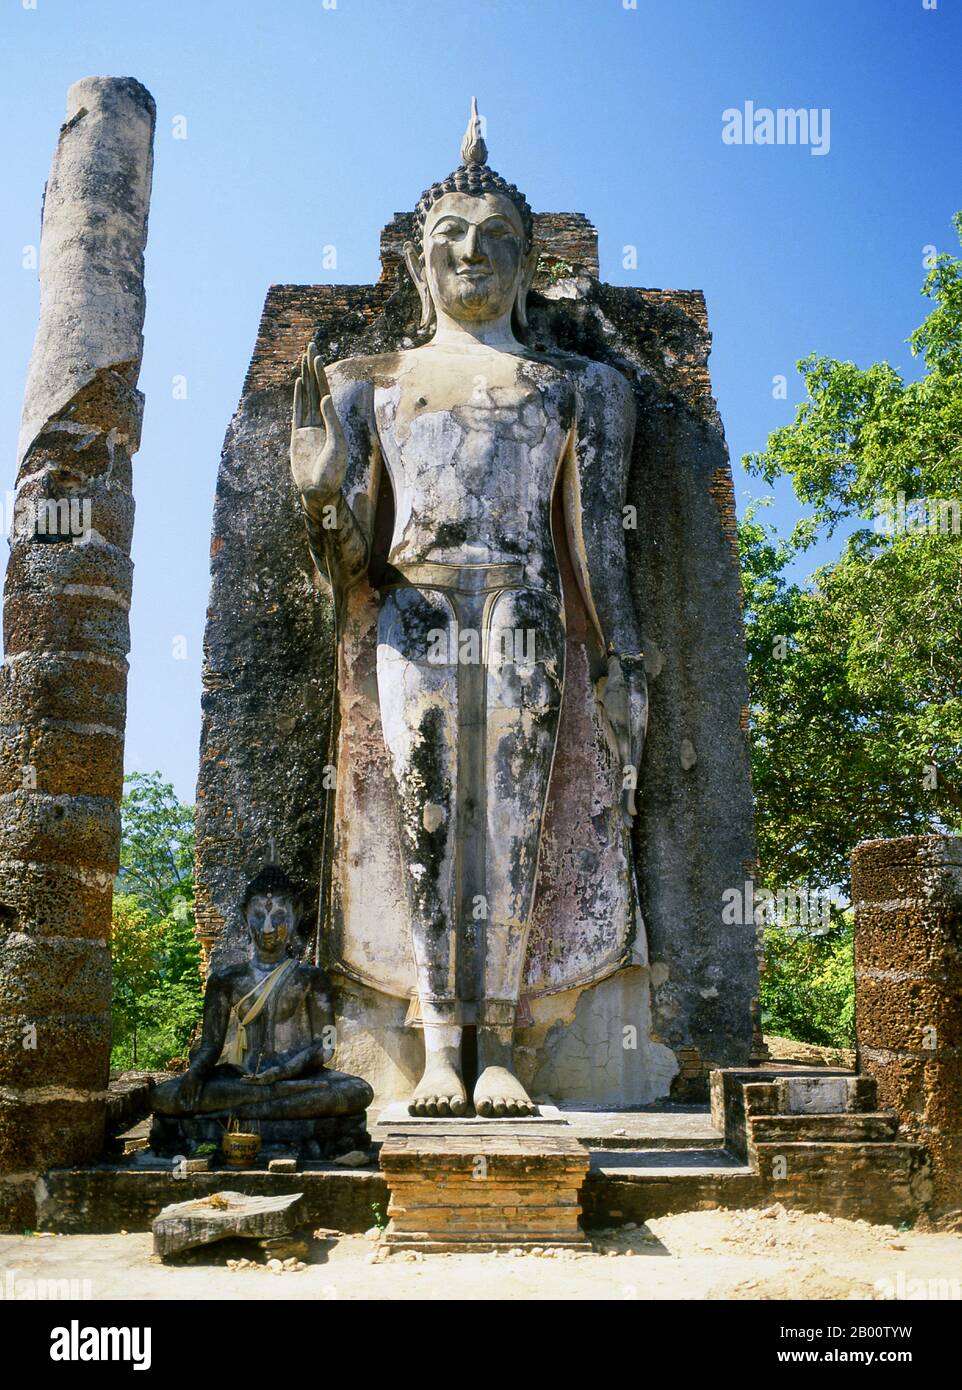 Thailand: Stehender Buddha, Wat Saphan Hin, Sukhothai Historischer Park. Sukhothai, was wörtlich "Dawn of Happiness" bedeutet, war die Hauptstadt des Sukhothai-Königreichs und wurde 1238 gegründet. Es war die Hauptstadt des thailändischen Reiches für etwa 140 Jahre. Stockfoto